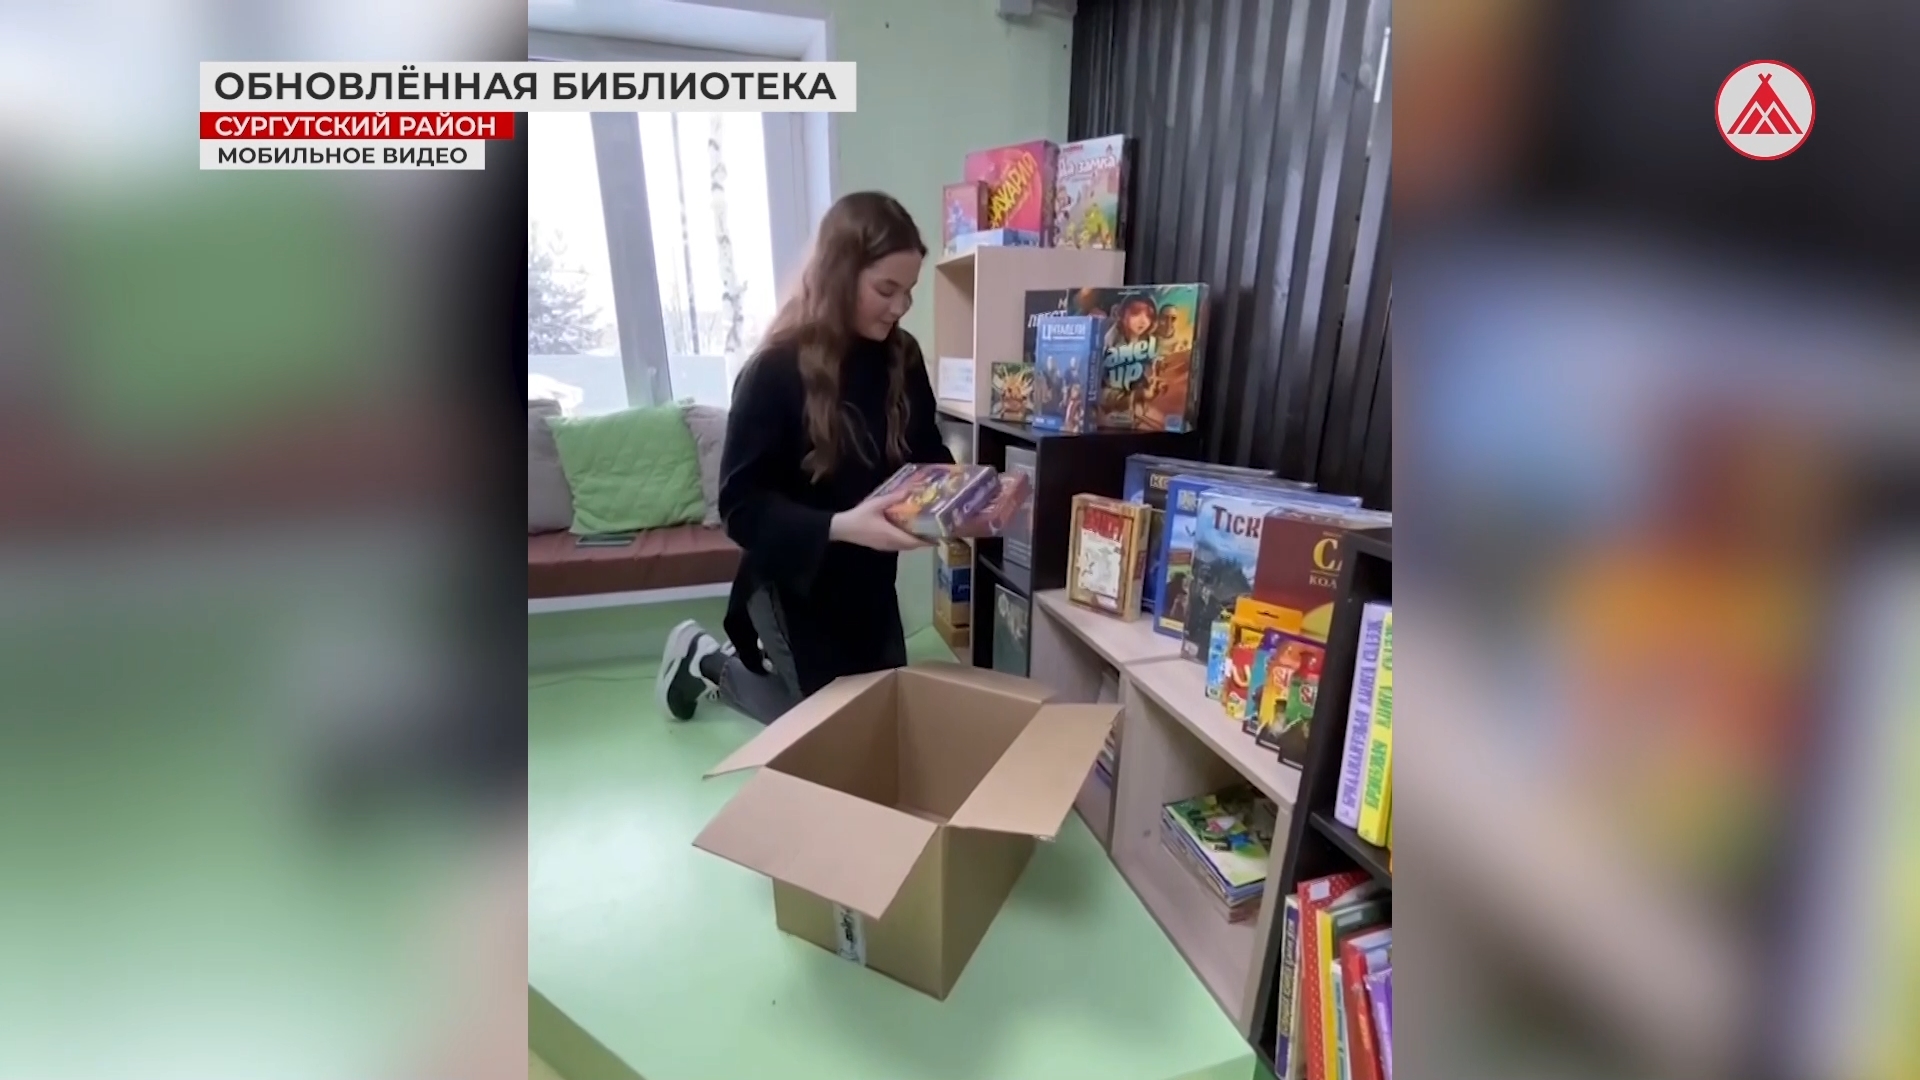 Модернизация библиотеки в Русскинской